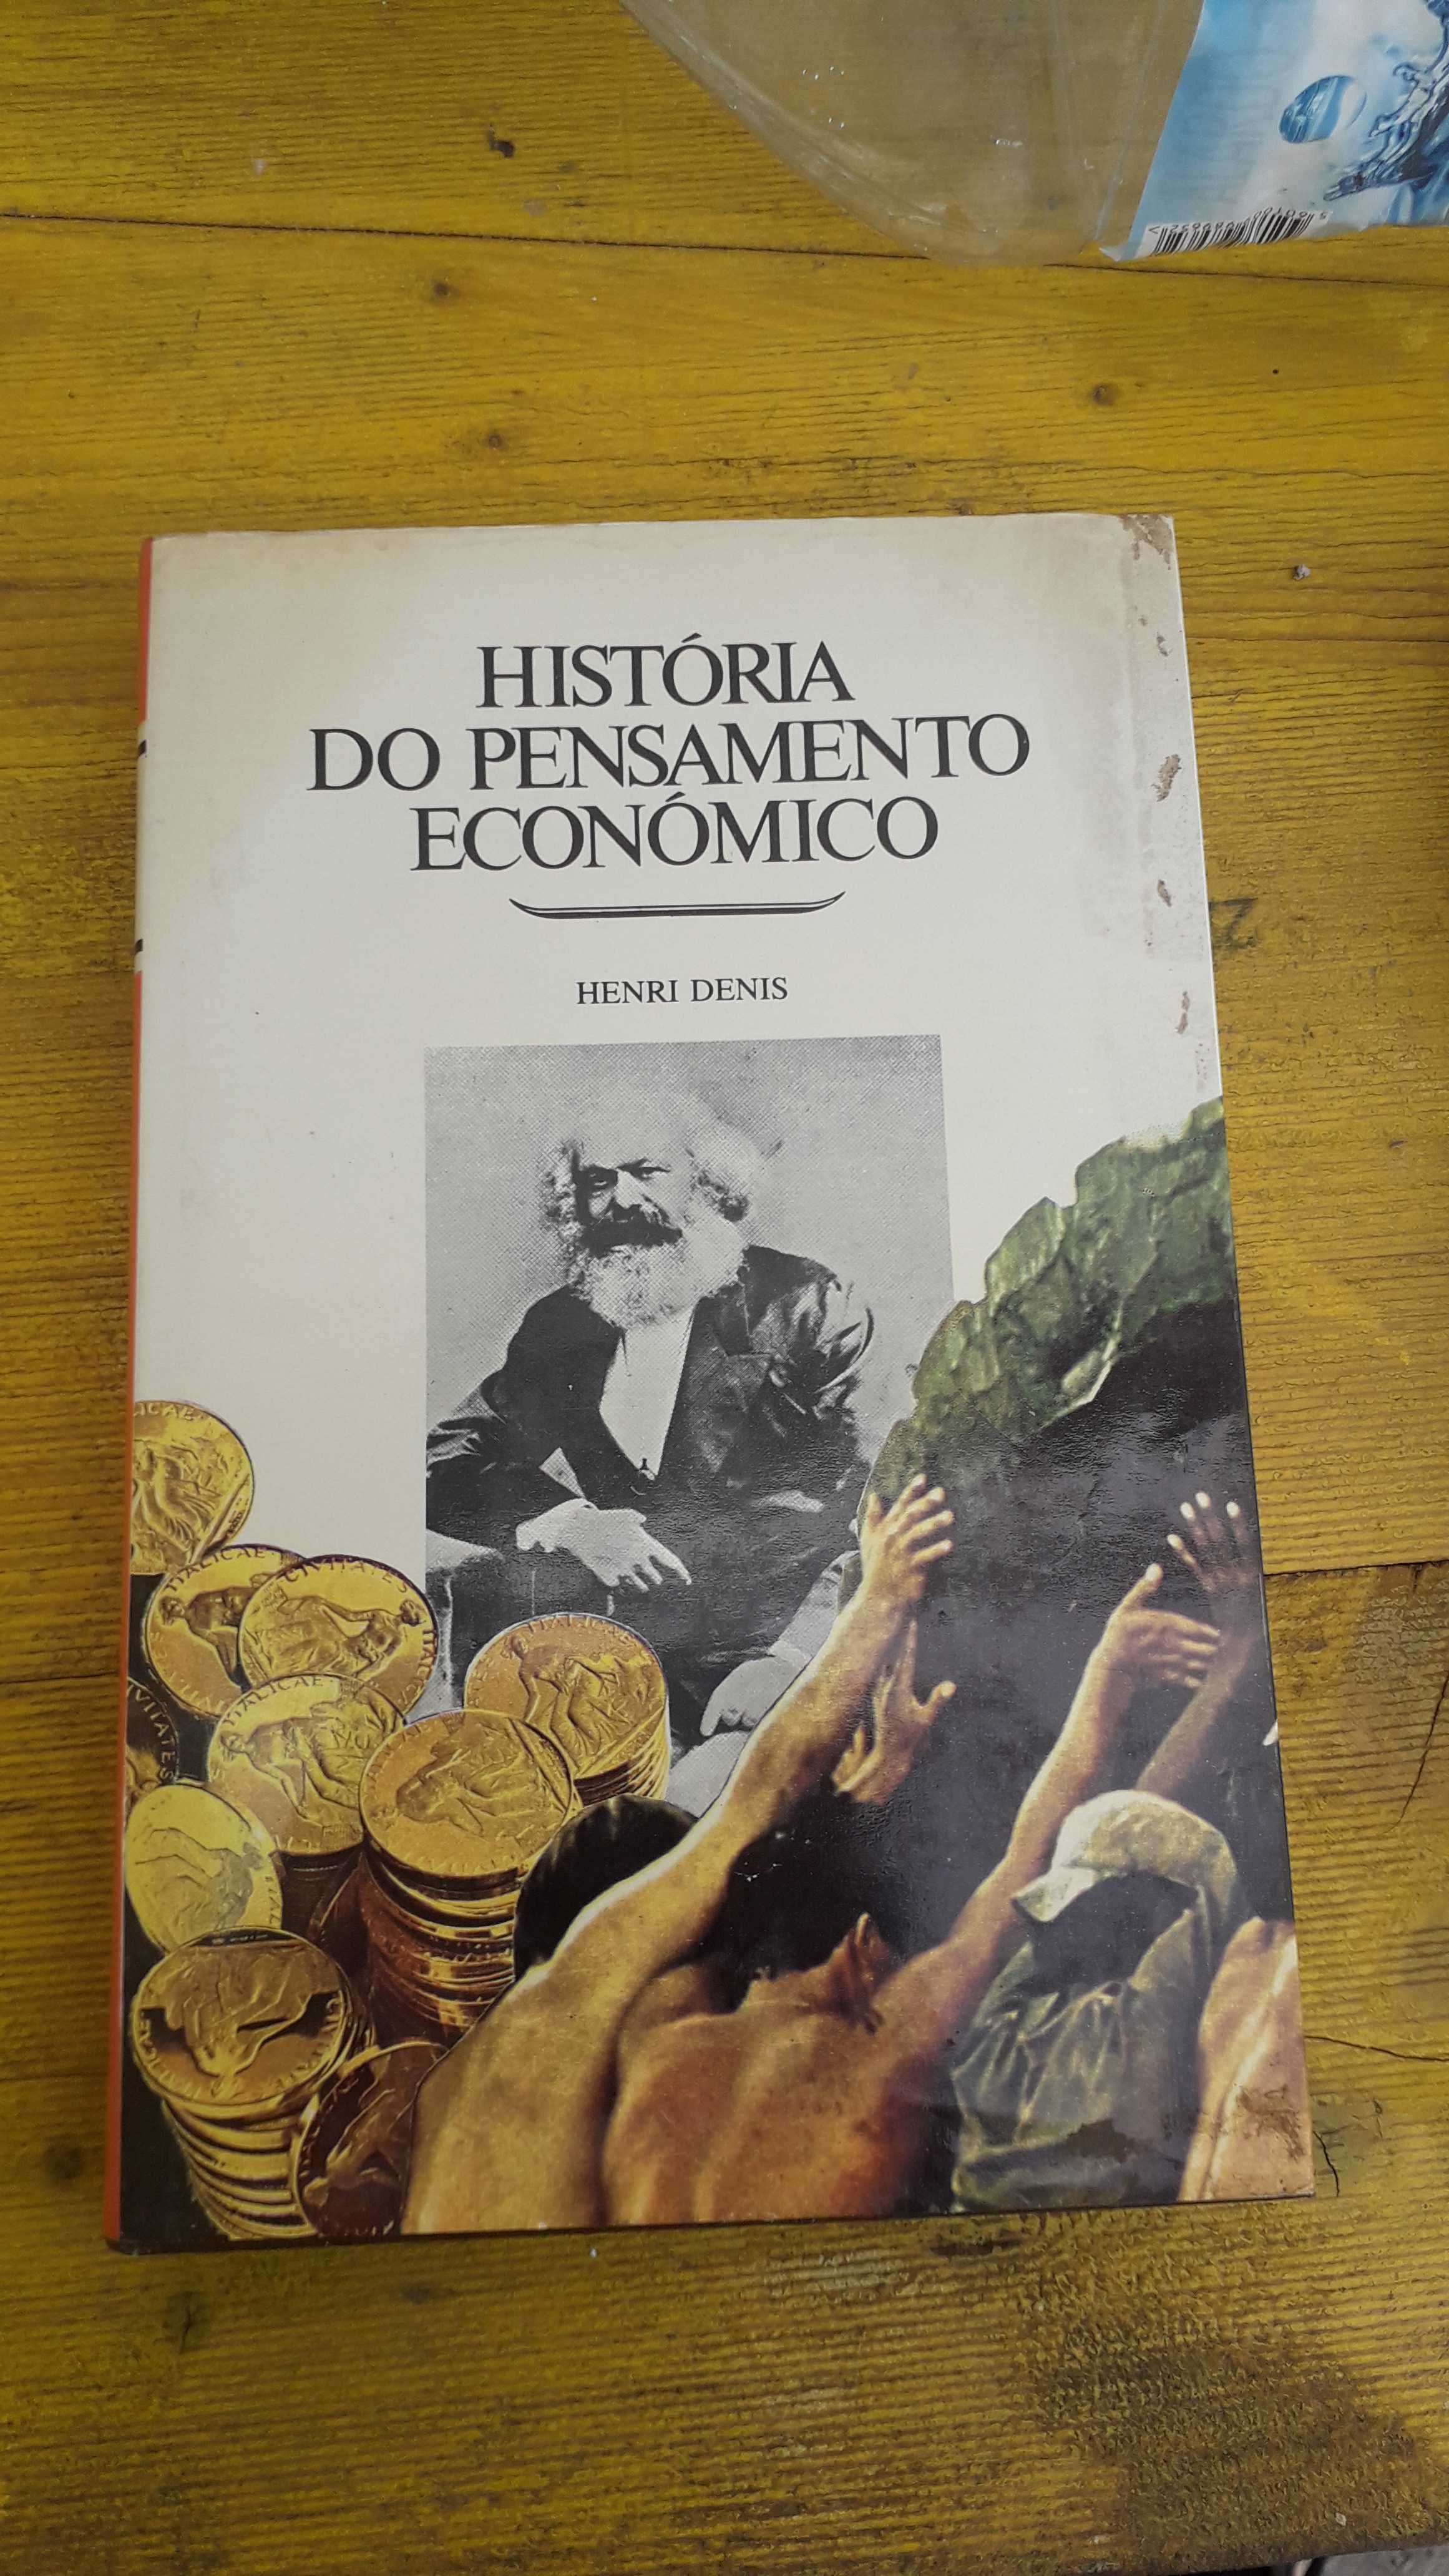 Livro Historia do Pensamento Economico de Henri Denis - Segundo volume